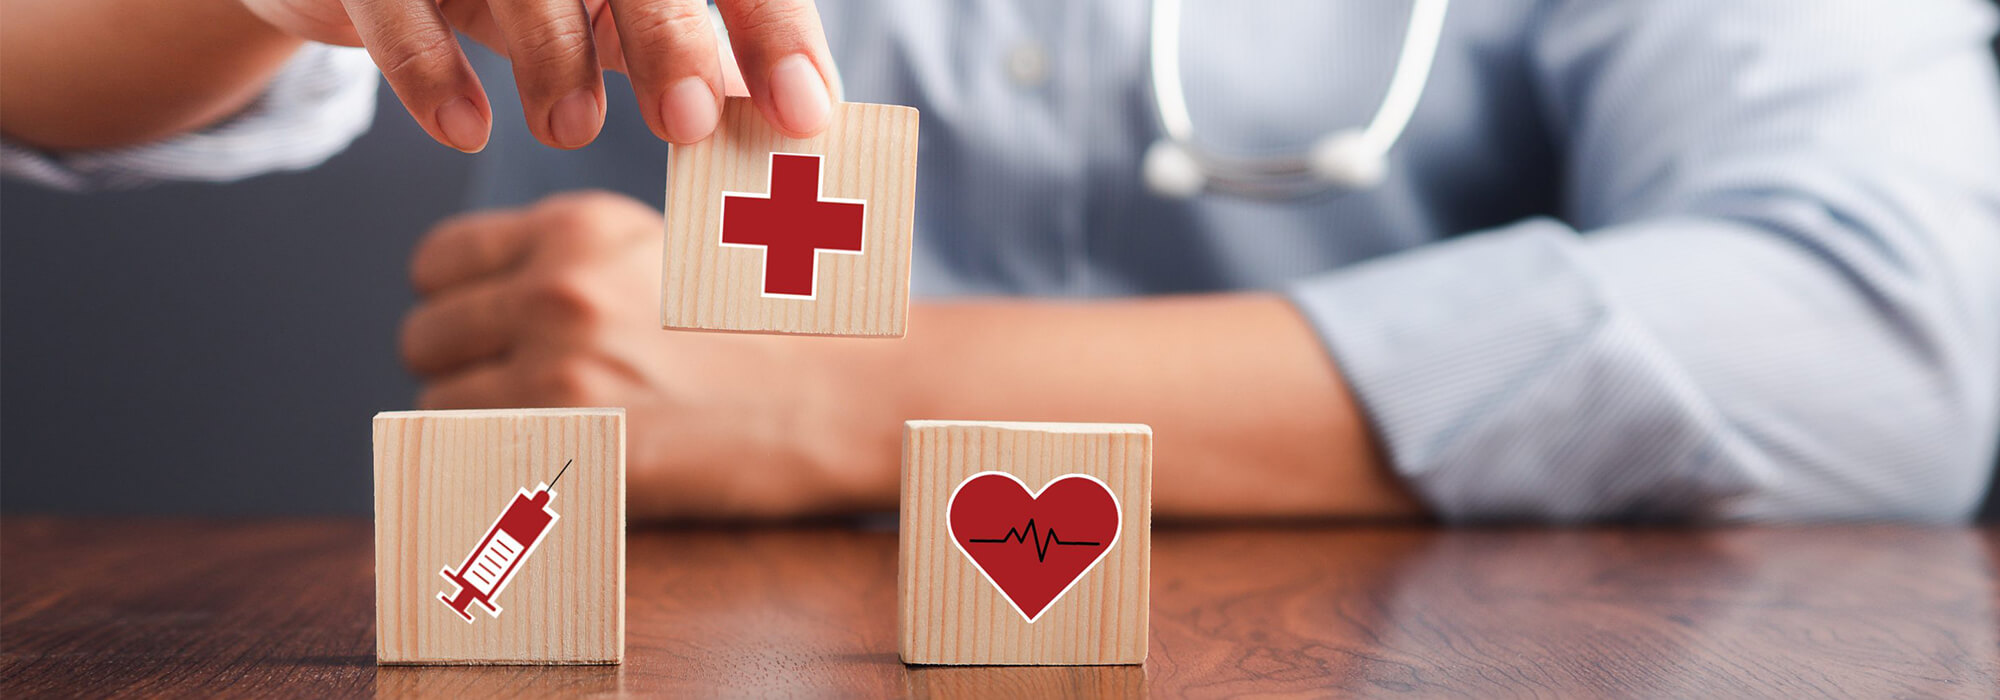 Assurance santé - Cubes en bois avec symbole santé